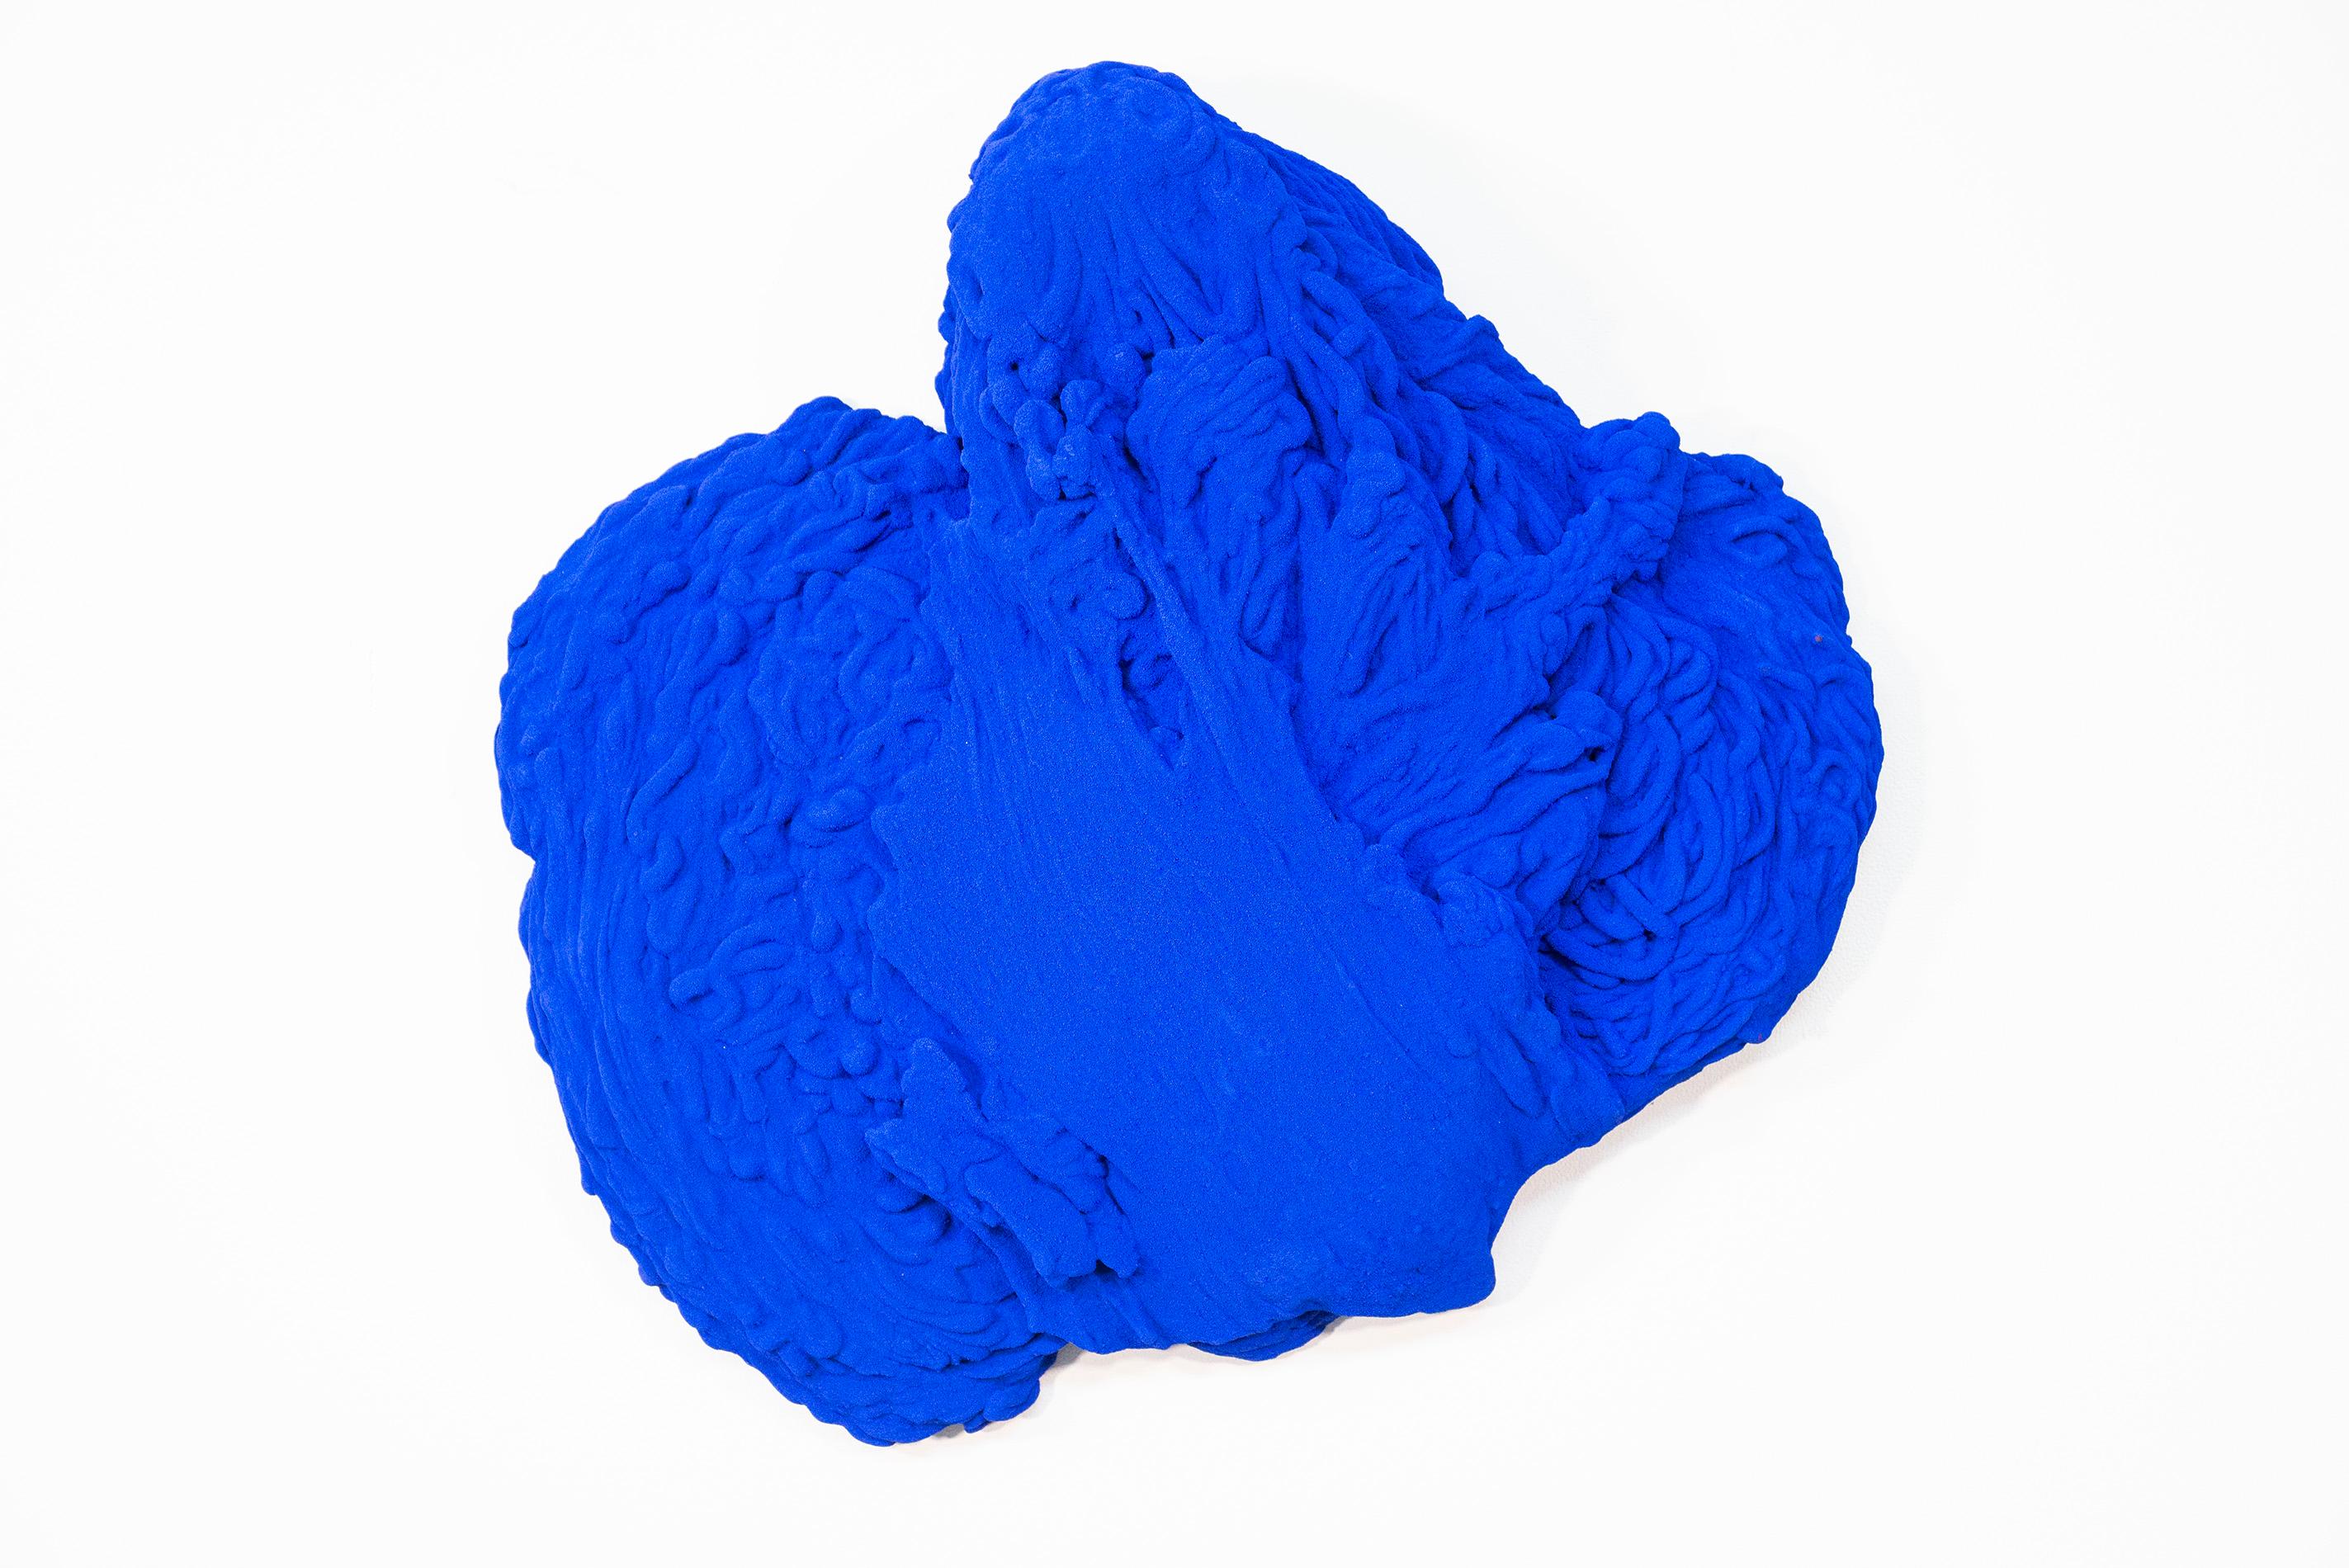 Blue Matter 2 - matte, blue, textured, abstract, mixed media wall sculpture